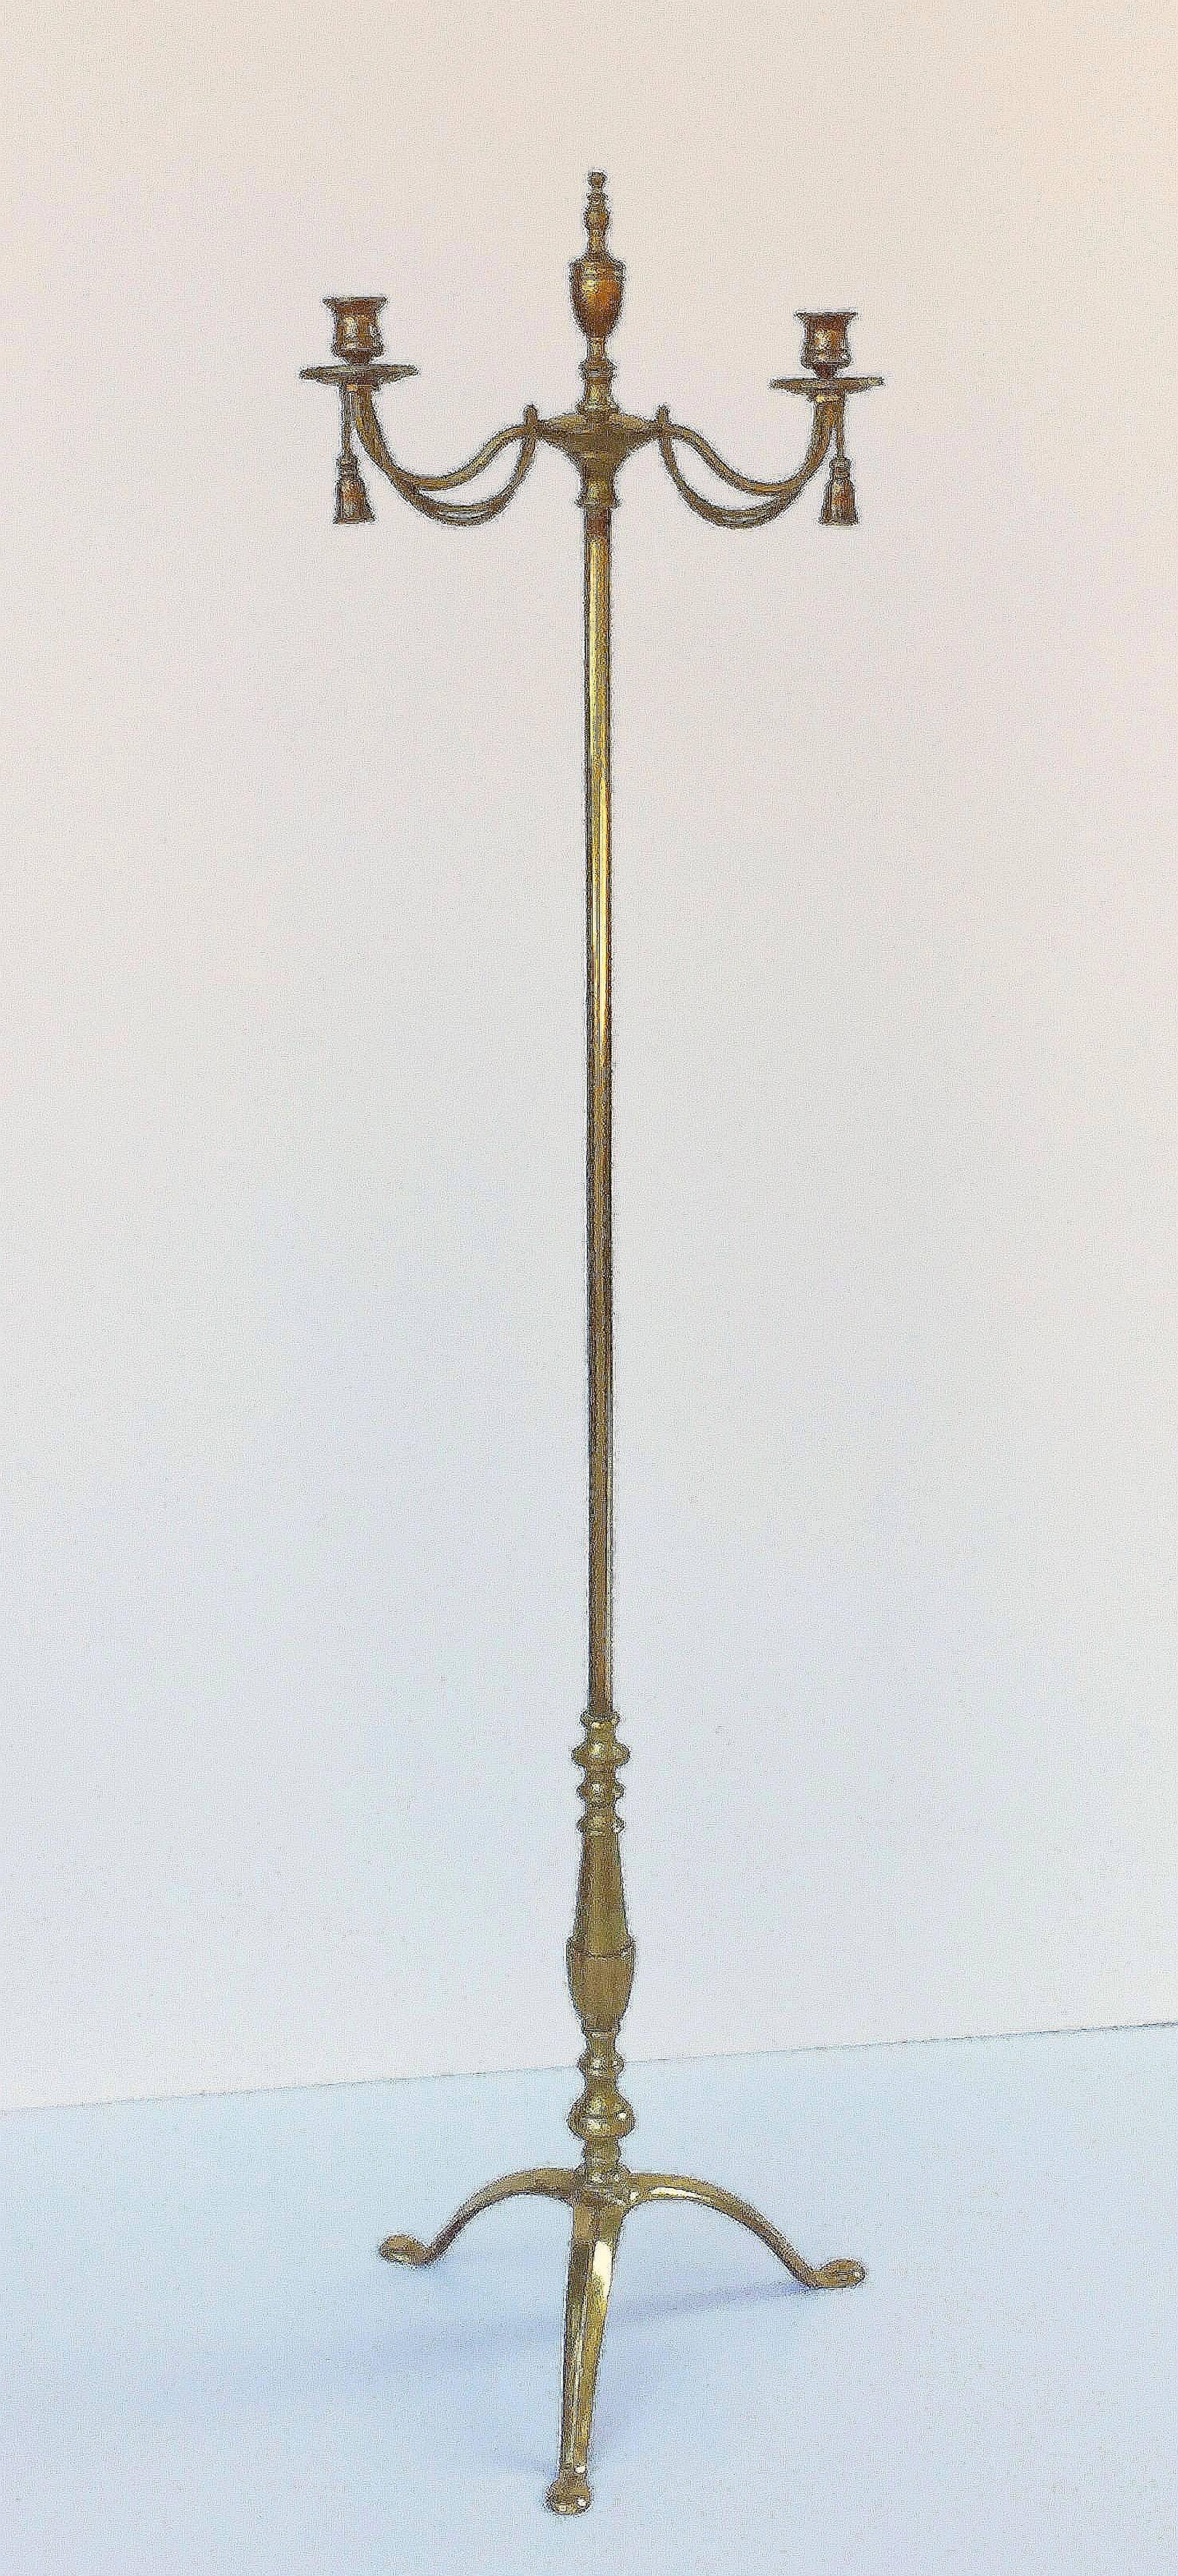 Ein feiner englischer Standkerzenhalter oder -leuchter aus Messing aus der Regency-Ära, mit einem Oberteil mit zwei drehbaren Serpentinen-Kerzenhaltern mit Quastendesign, die jeweils in den Säulenständer mit Urne am oberen Ende und Dreibeinfuß am